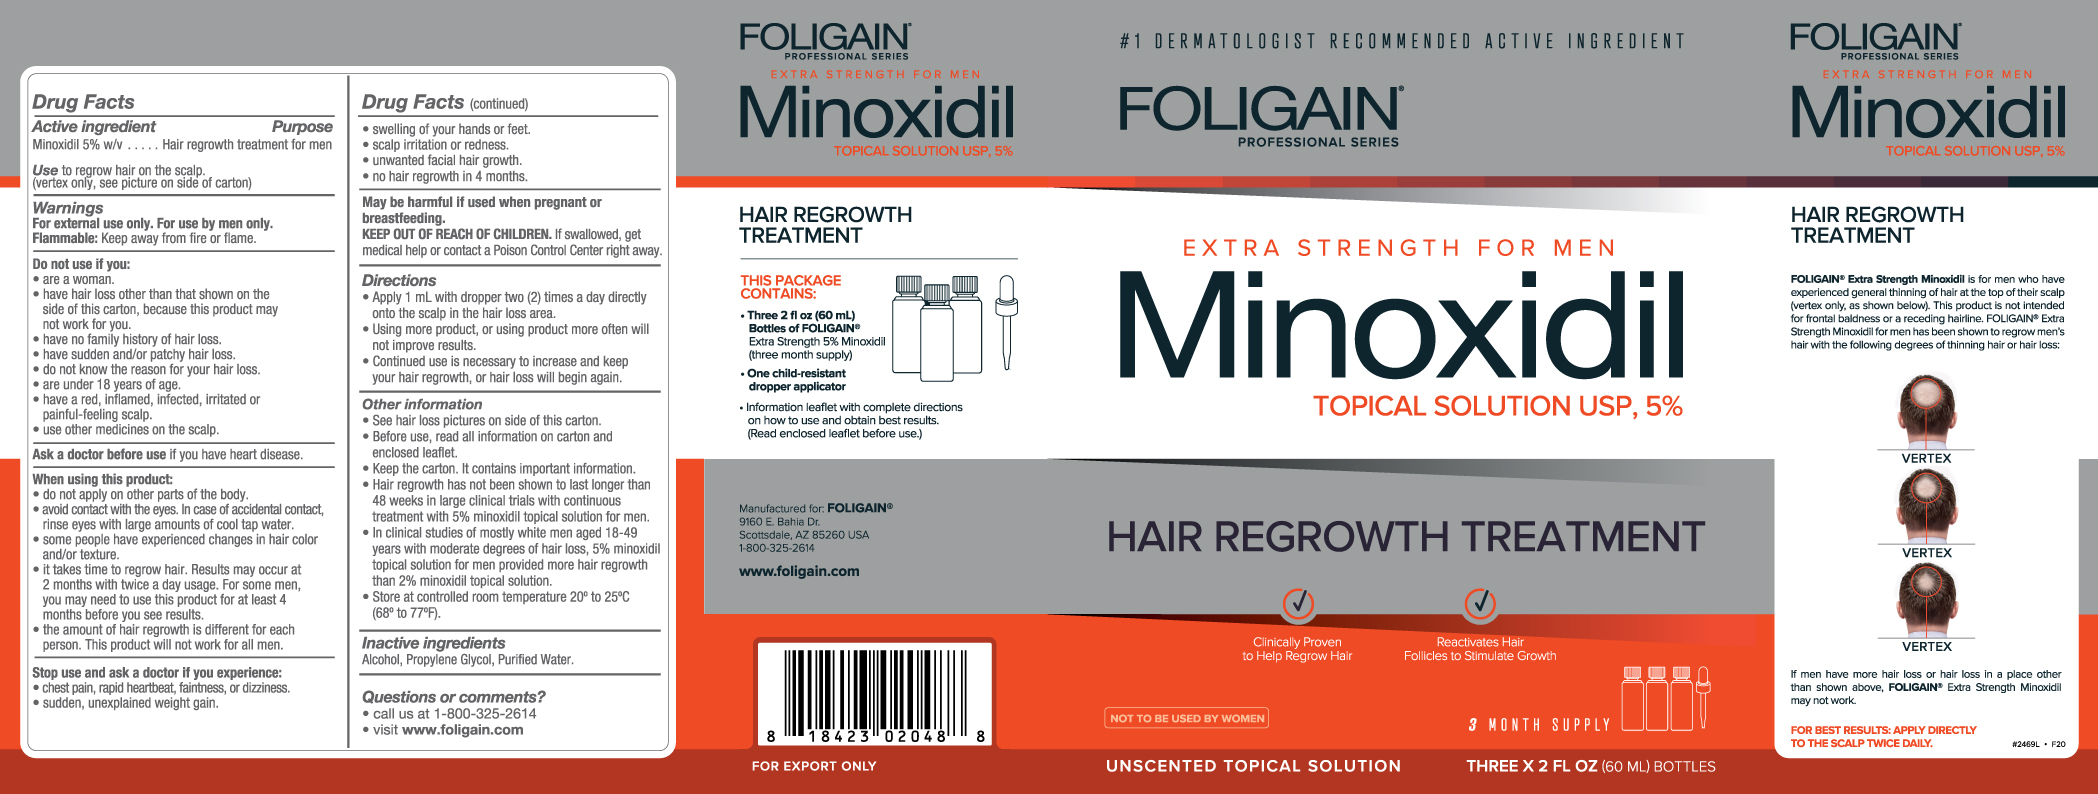 FOLIGAIN 5% HAIR REGROWTH TREATMENT For (6 fl oz) 180ml 3 Month Supply by FOLIGAIN - BIOVEA